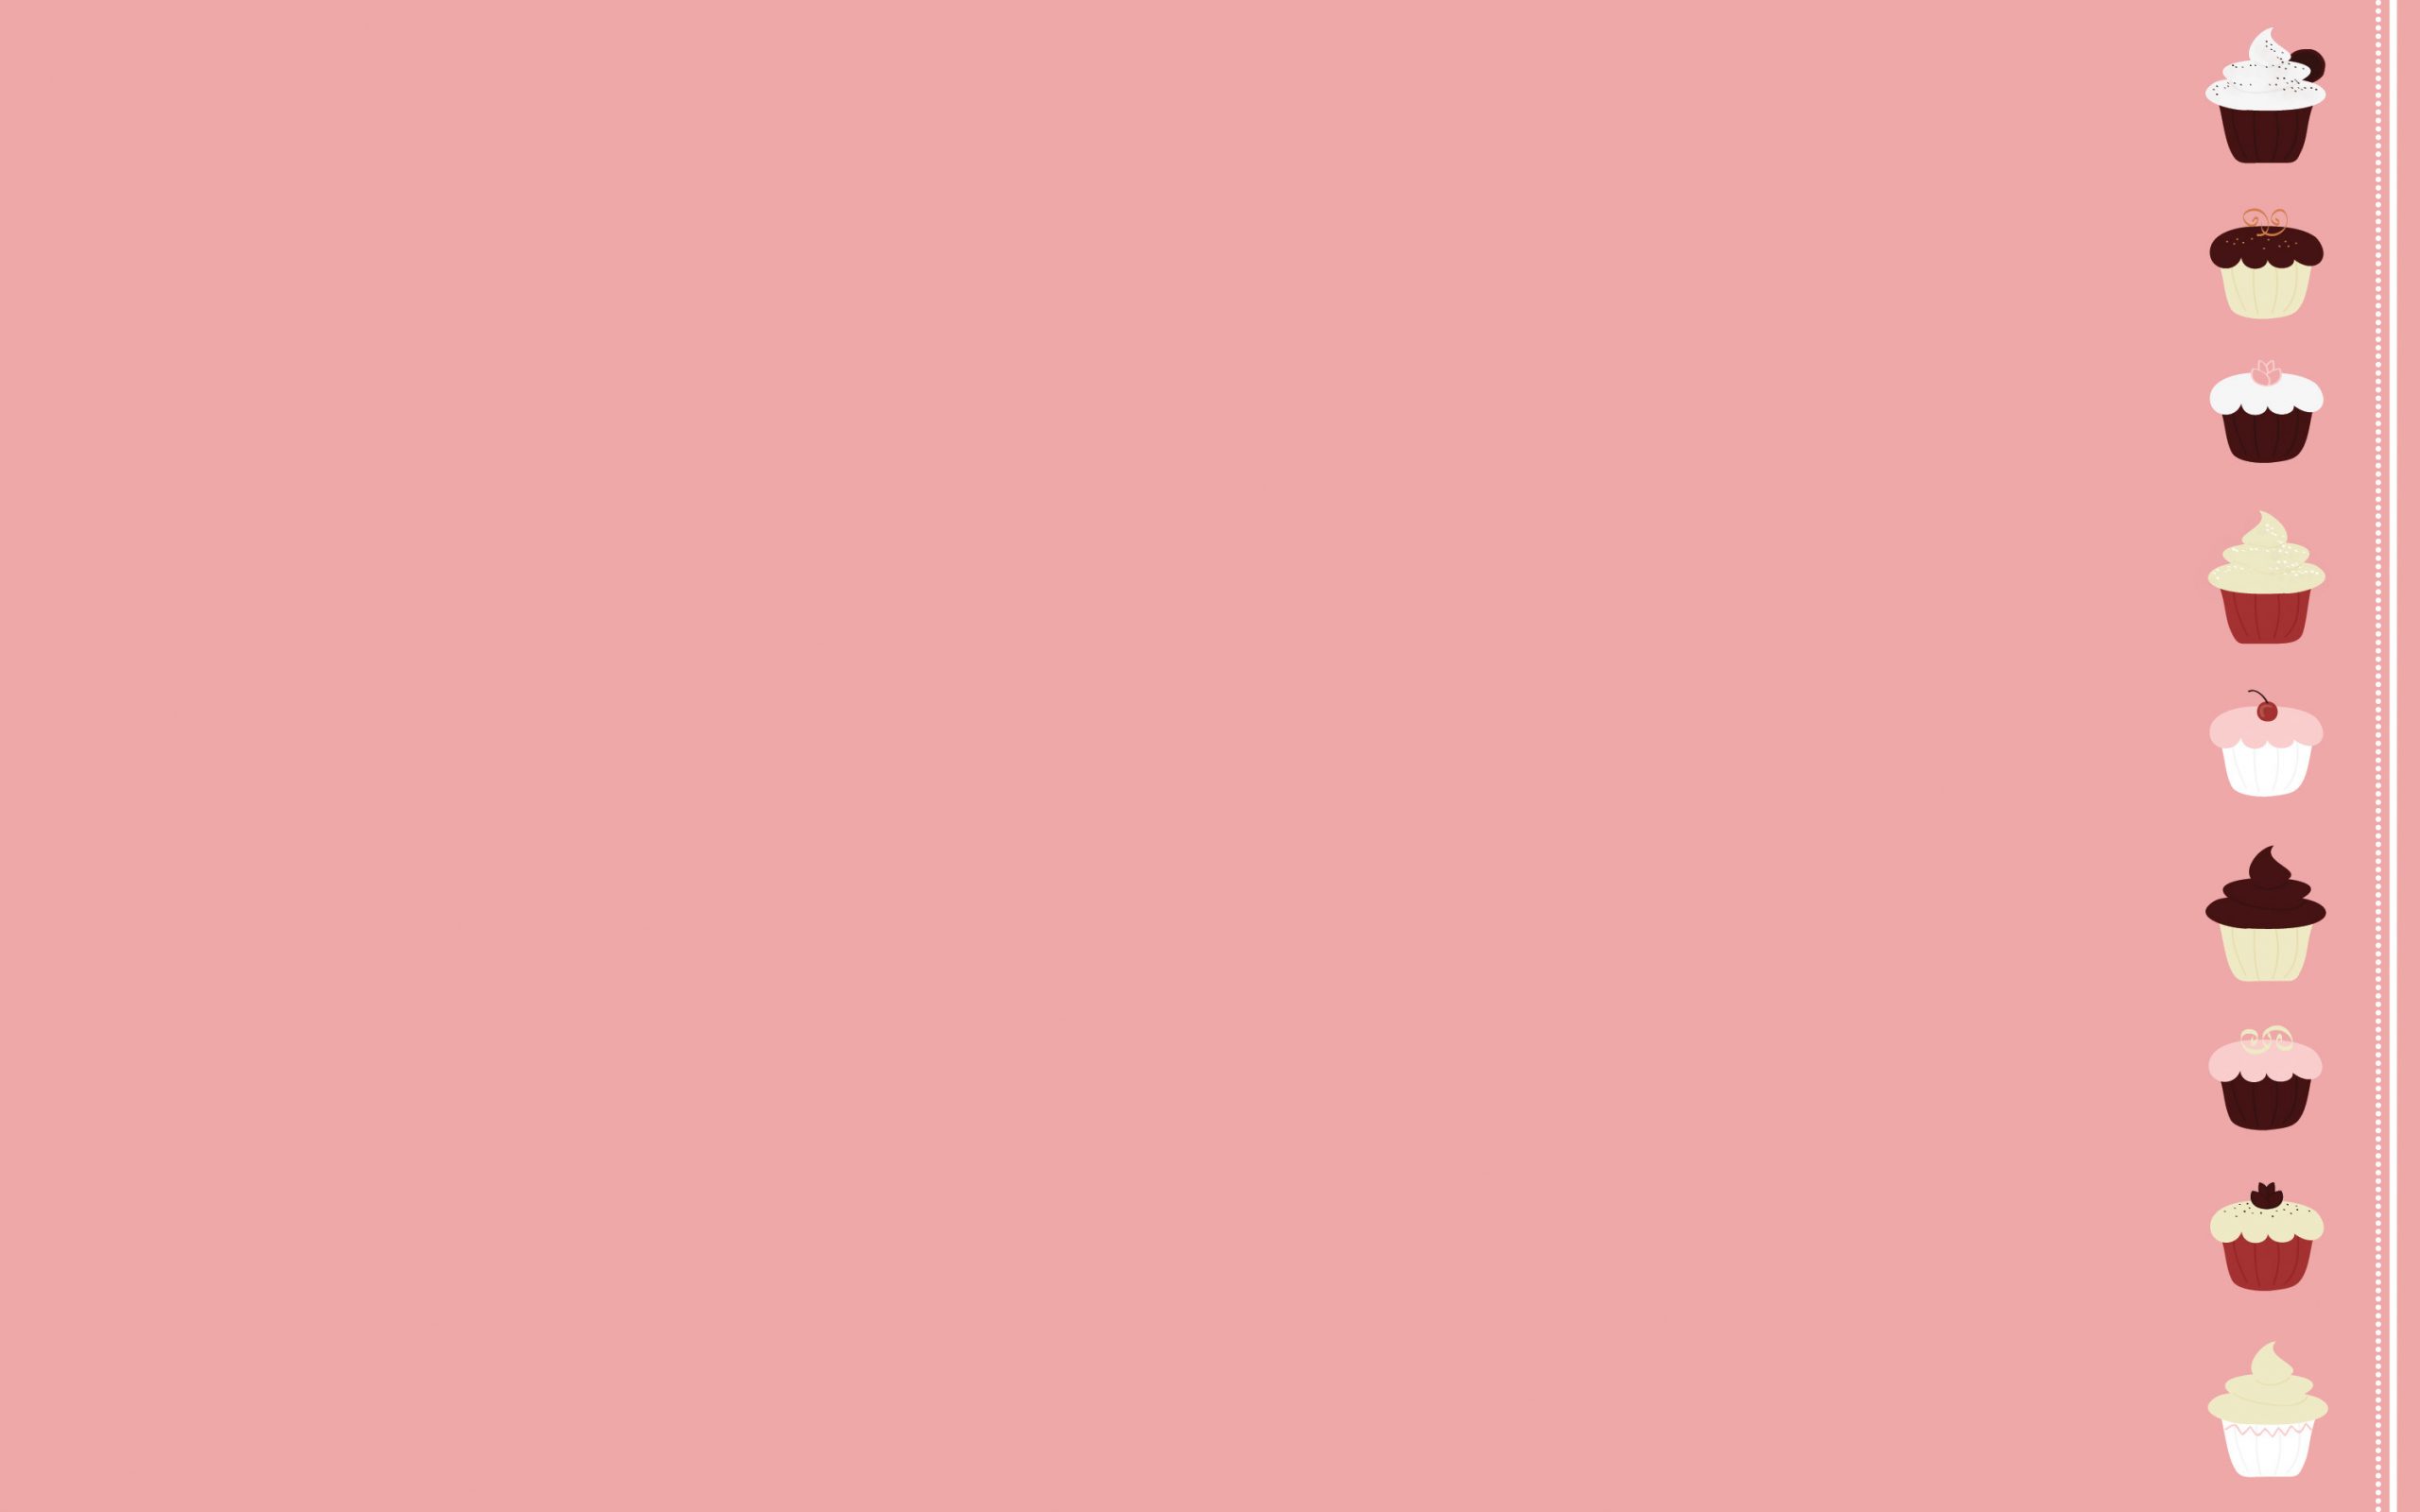 Hình nền màu hồng dễ thương này sẽ khiến bạn vui lòng mỗi khi mở máy tính. Với một tông màu hồng nữ tính và các họa tiết xinh xắn, nó đem lại cho bạn một cảm giác dễ chịu và thư giãn. Bạn sẽ tự hỏi tại sao lại không đổi hình nền sớm hơn.